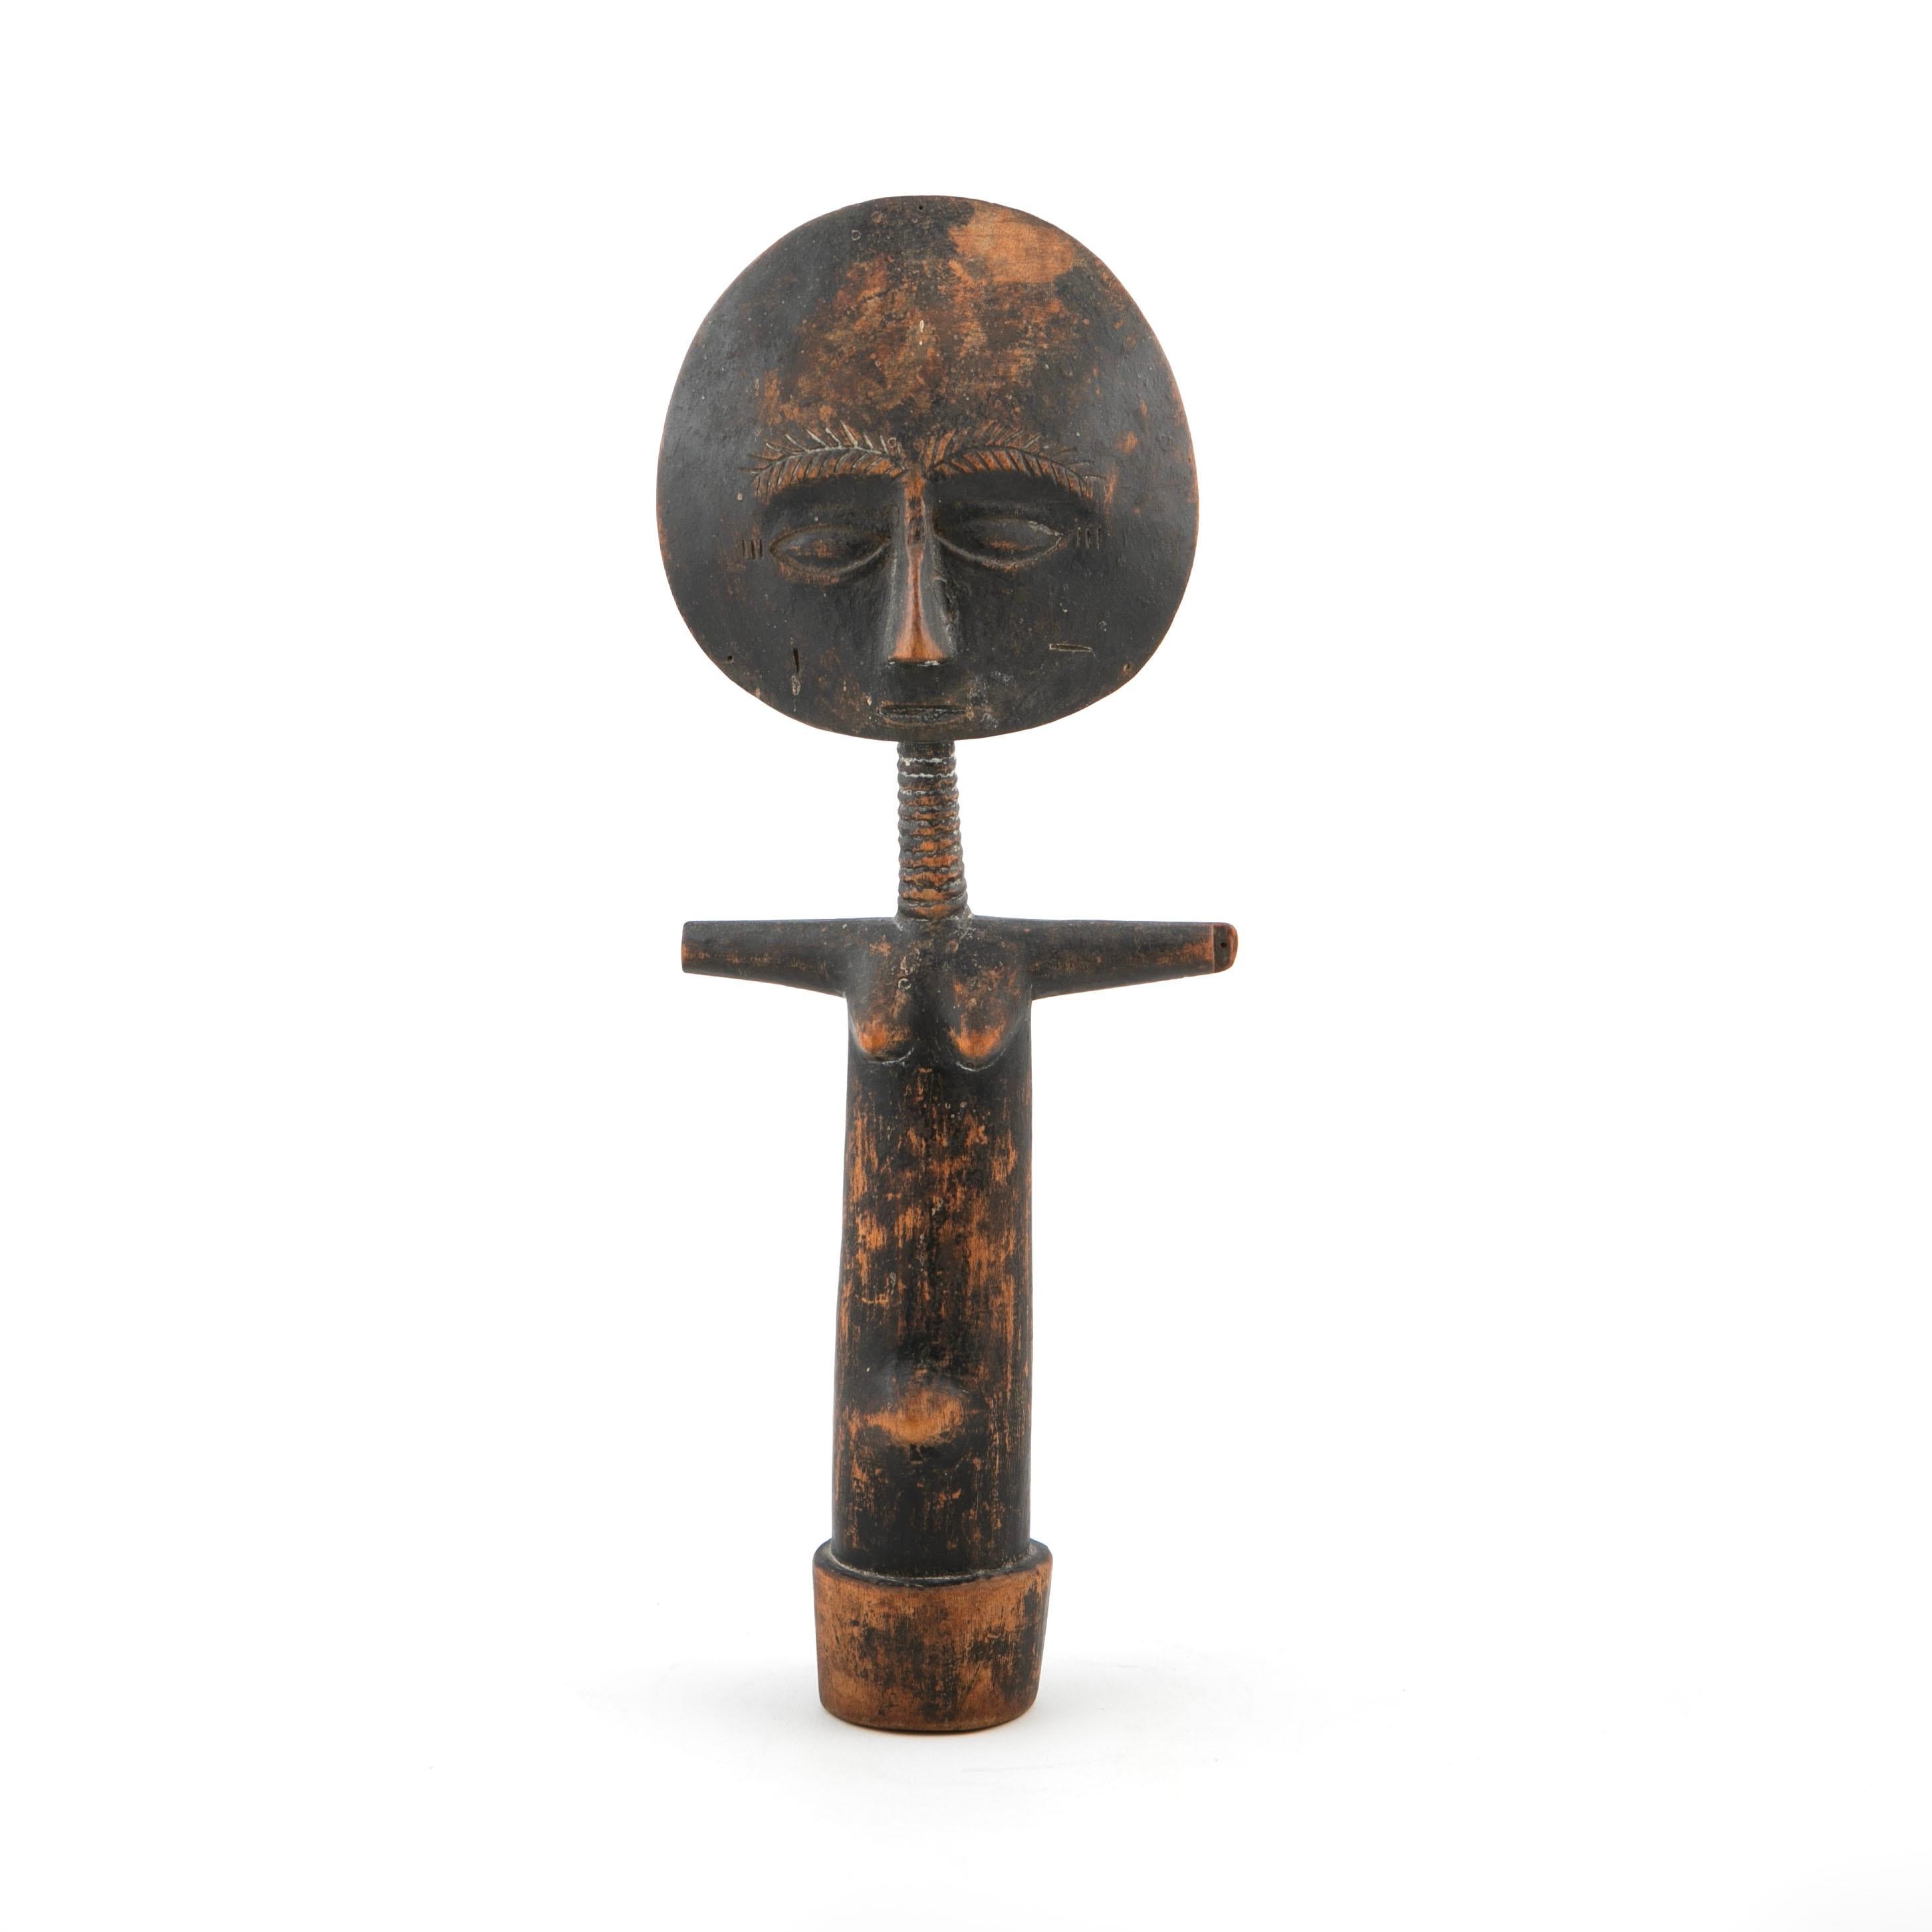 Akuaba aus geschnitztem Holz, manchmal auch als Ashanti-Puppe oder Fanti-Puppe bekannt.
Unberührter Zustand mit schöner natürlicher, altersbedingter Patina.
Akua'ba (manchmal auch Akwaba oder Akuba genannt) sind rituelle Fruchtbarkeitspuppen aus